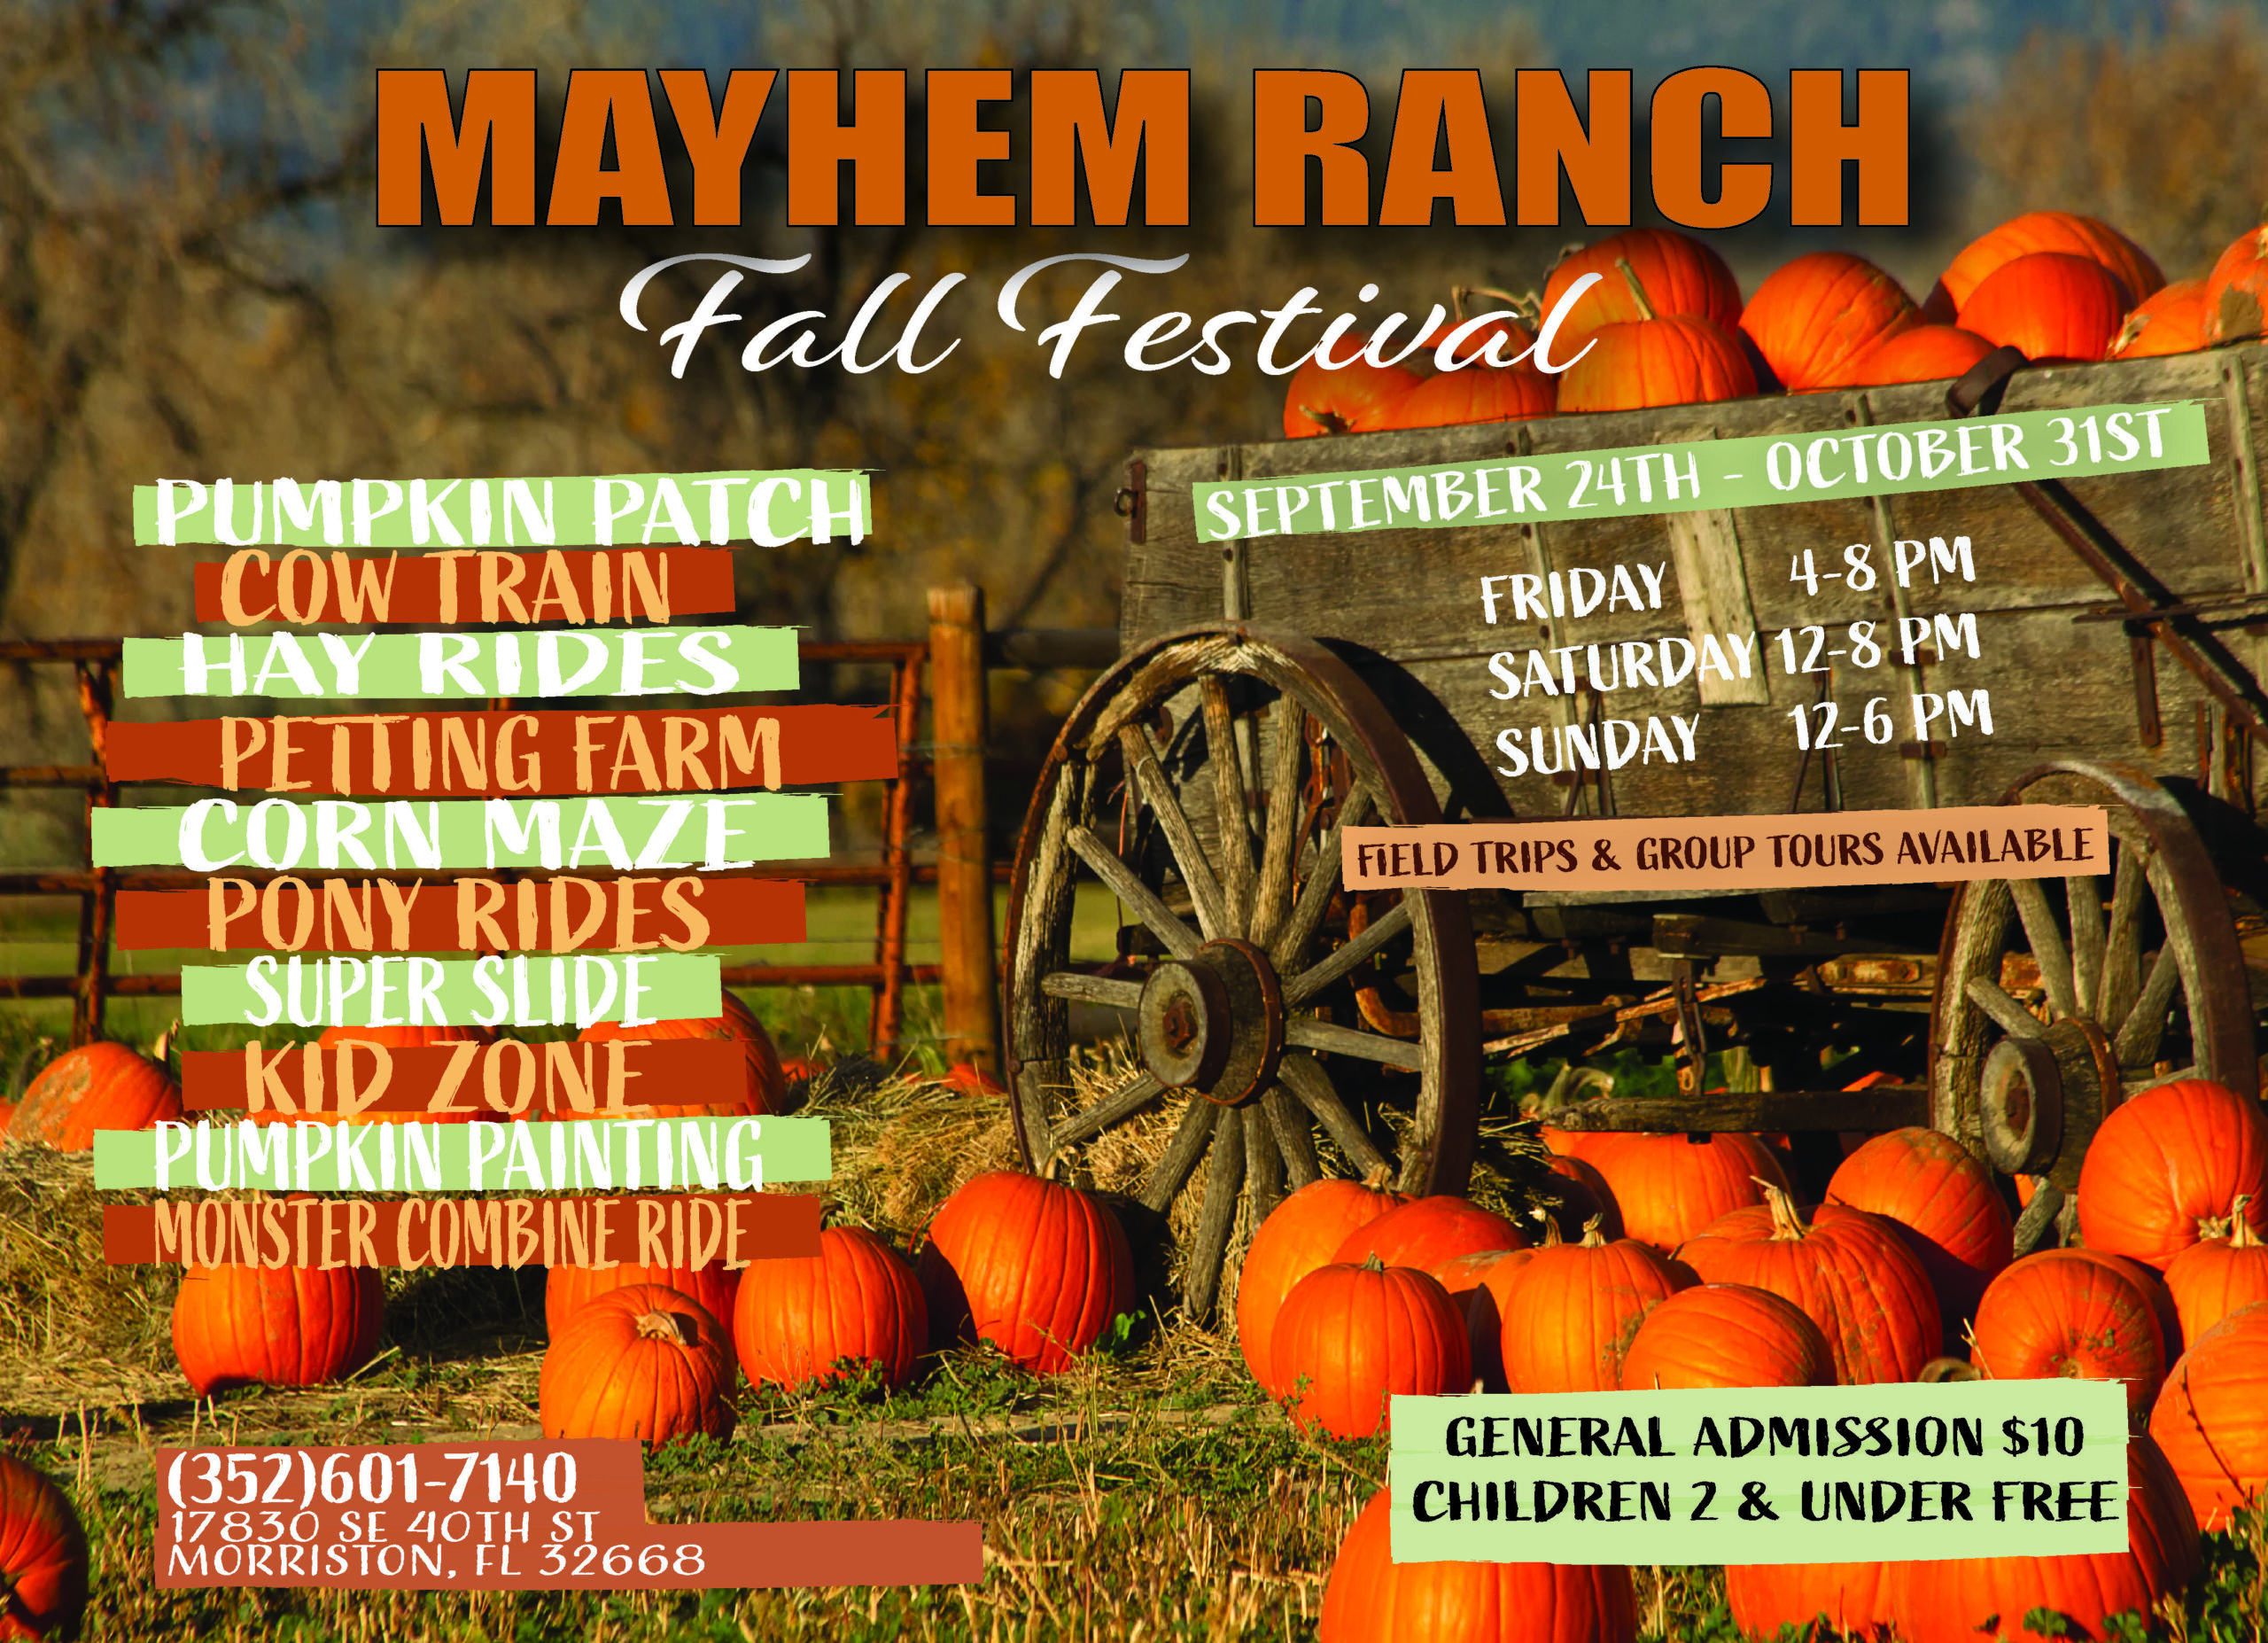 Mr Fall Festival Postcard 5 X 7 Scaled - Mayhem Ranch